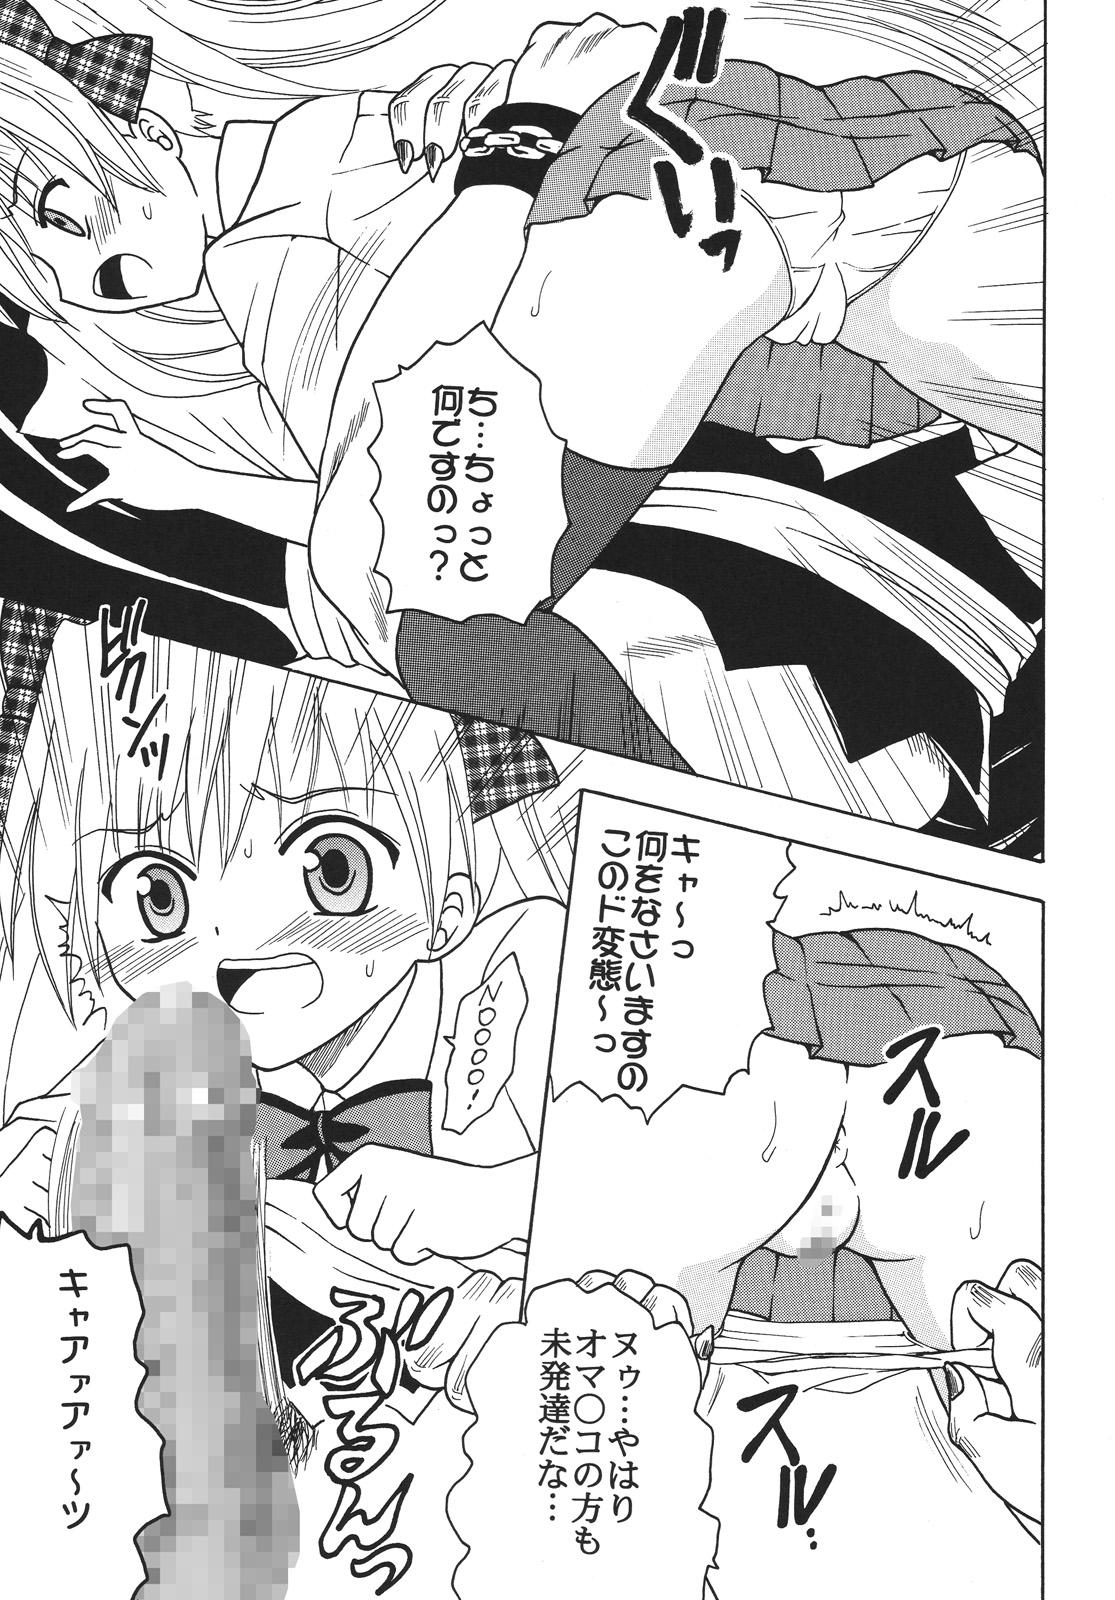 Short Nakadashi Maid no Hinkaku 3 - Kamen no maid guy Bikini - Page 6